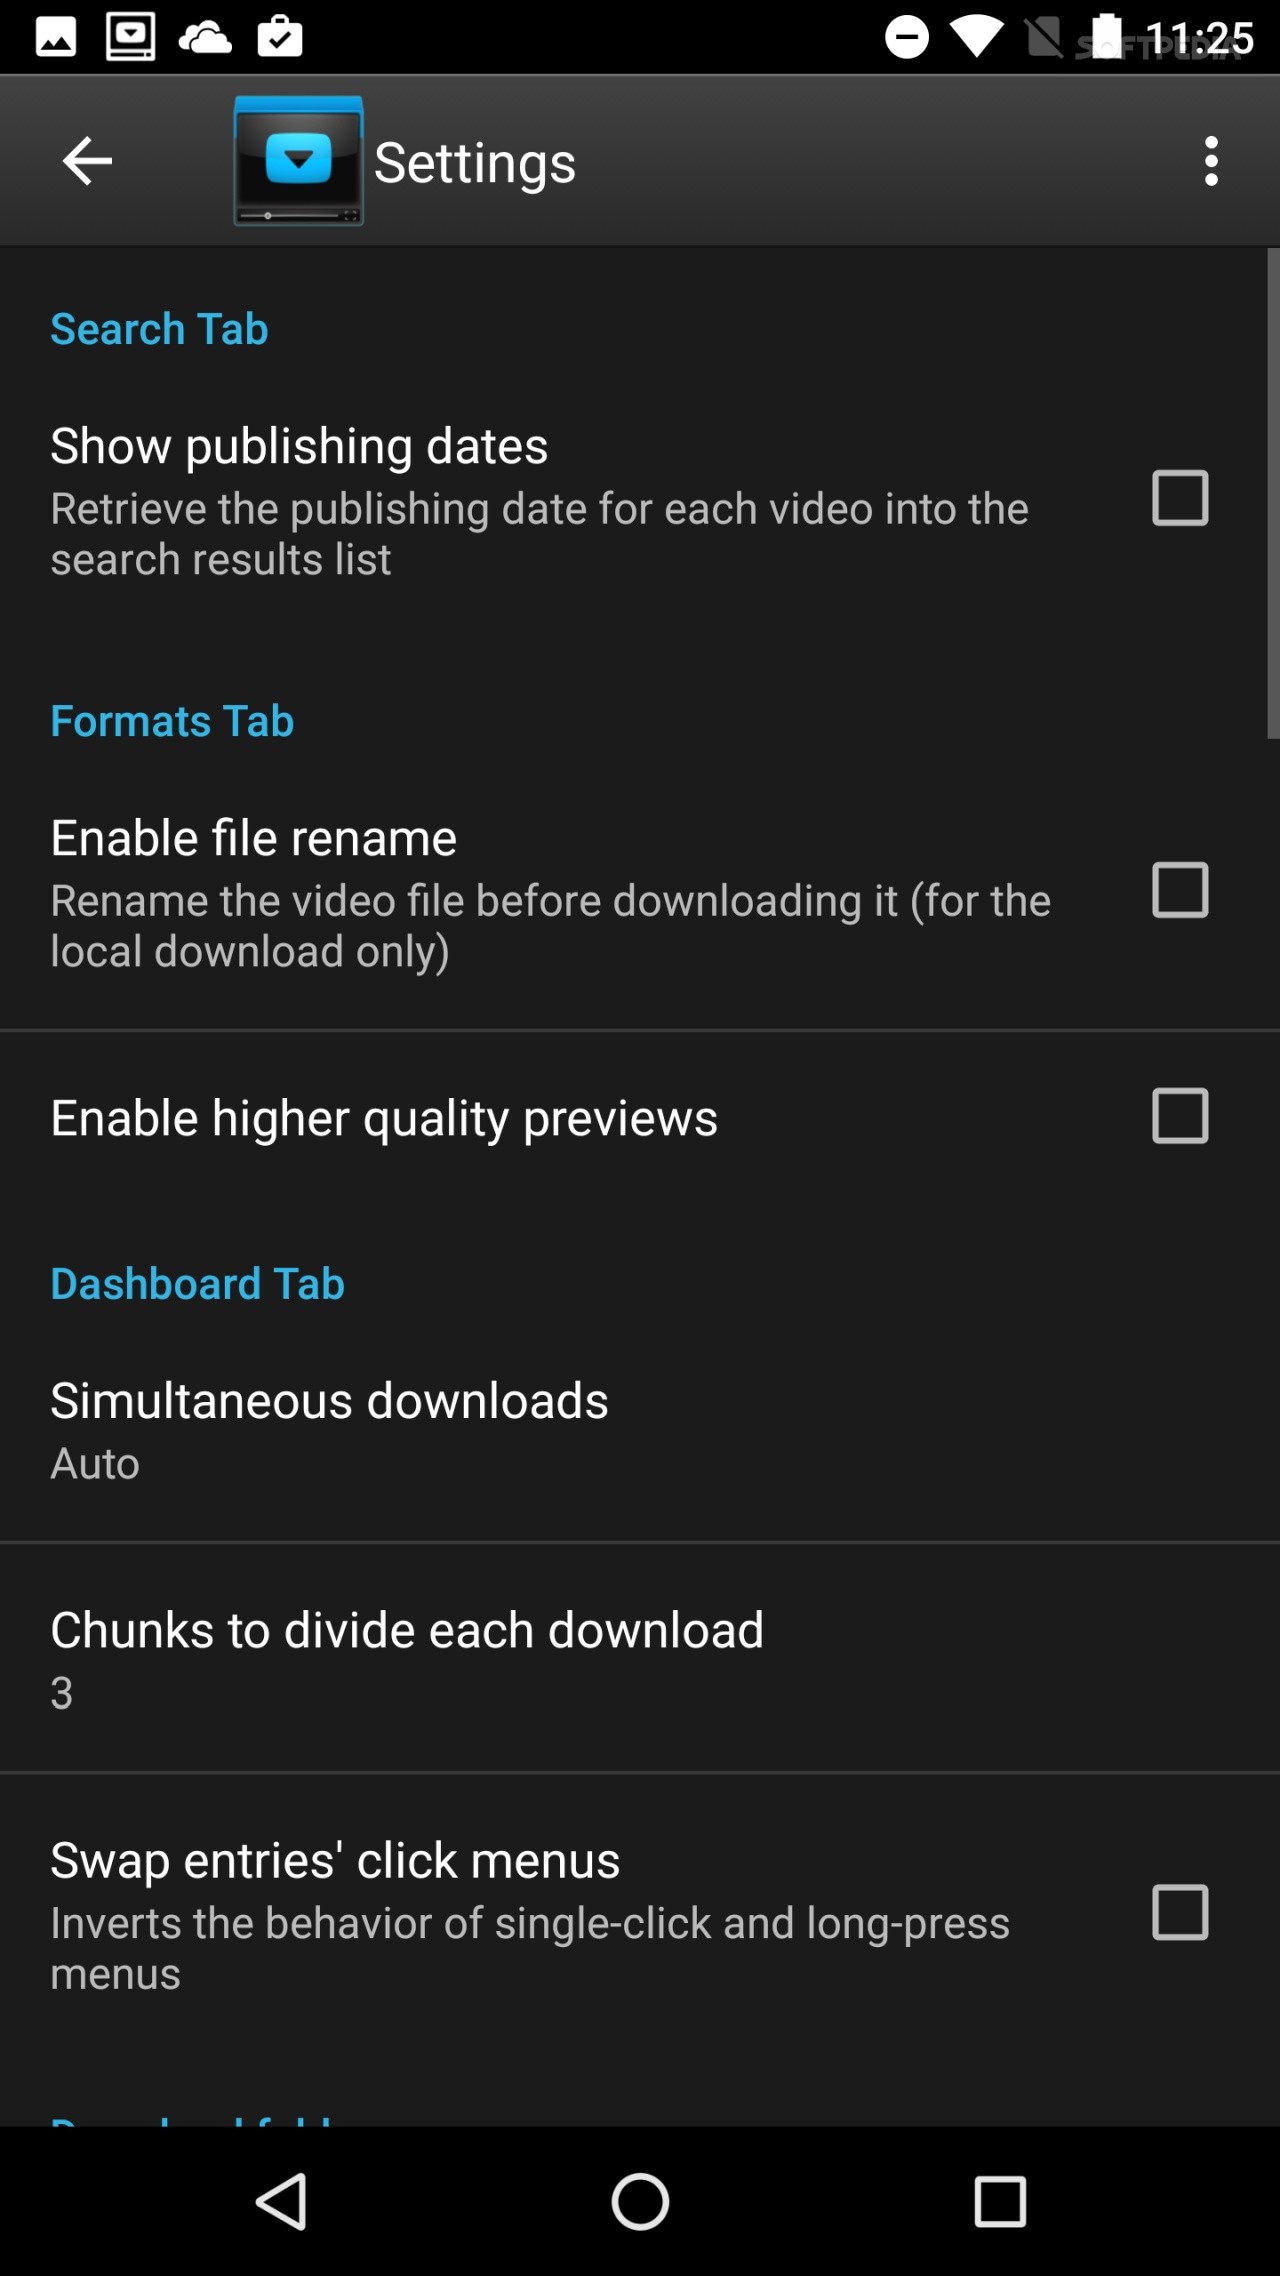 Downloader for Android  dentex's  Downloader for